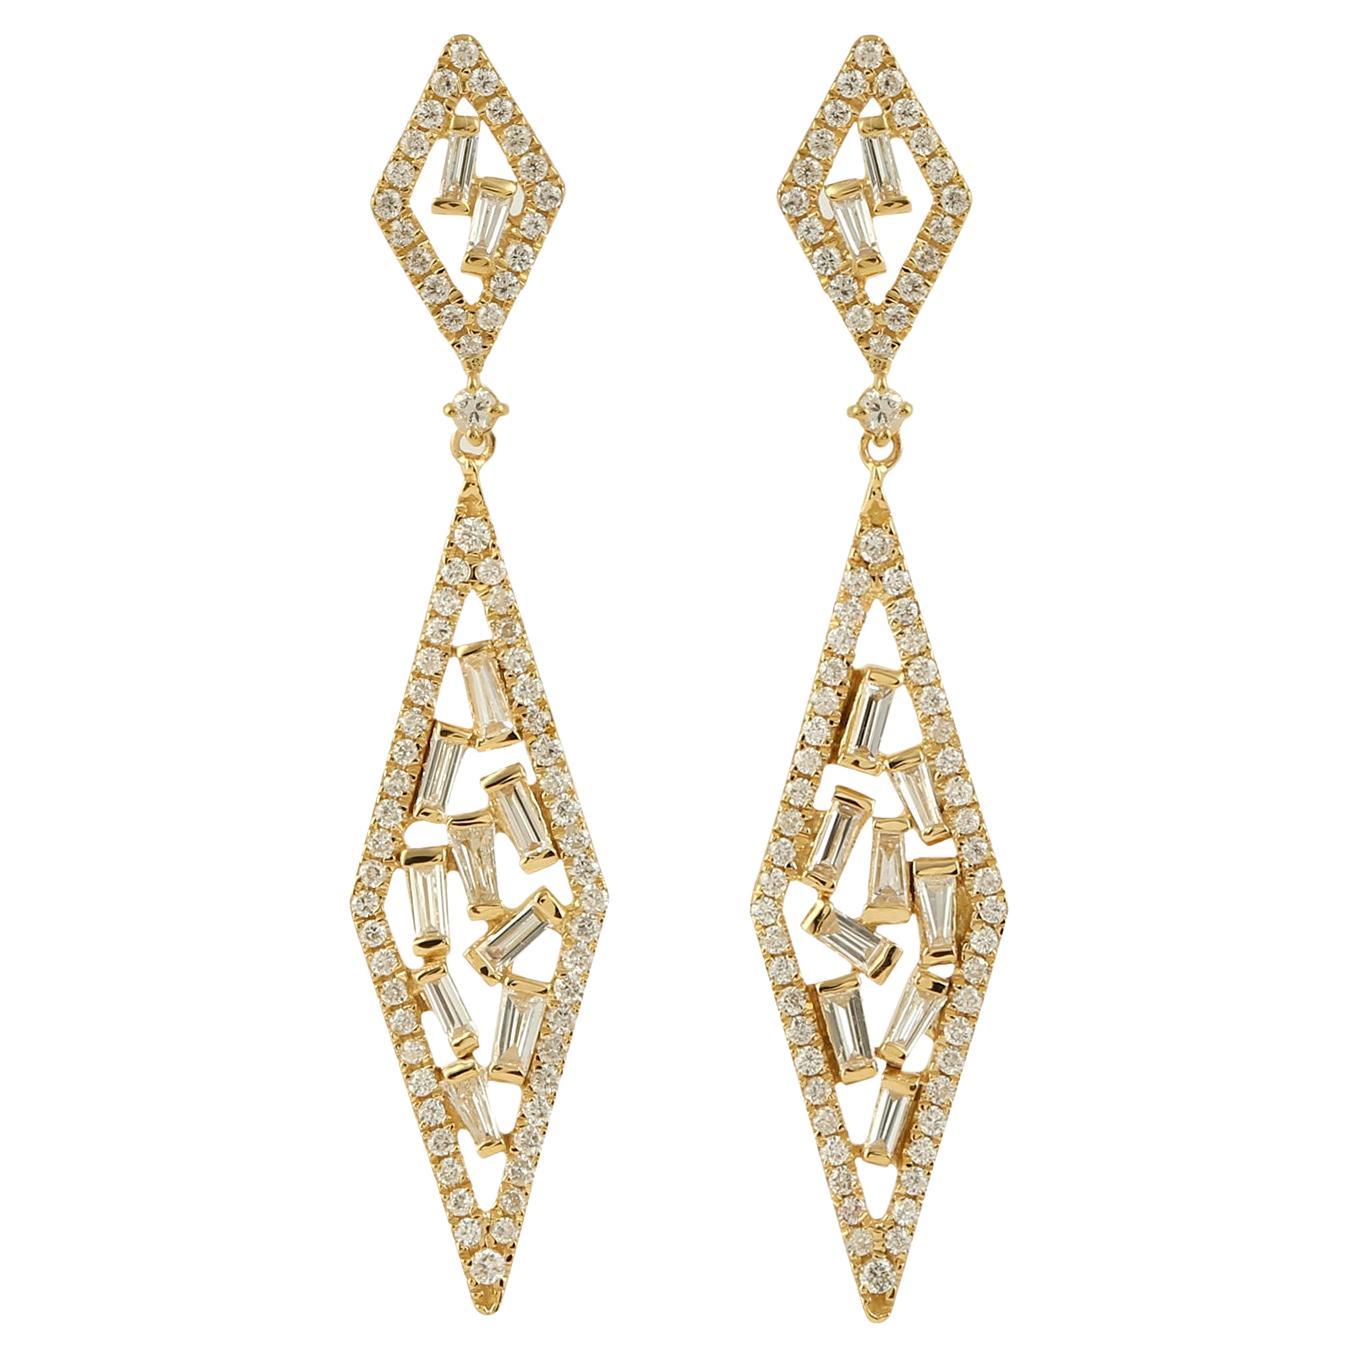 Boucles d'oreilles pendantes en or jaune 18 carats avec diamants baguettes